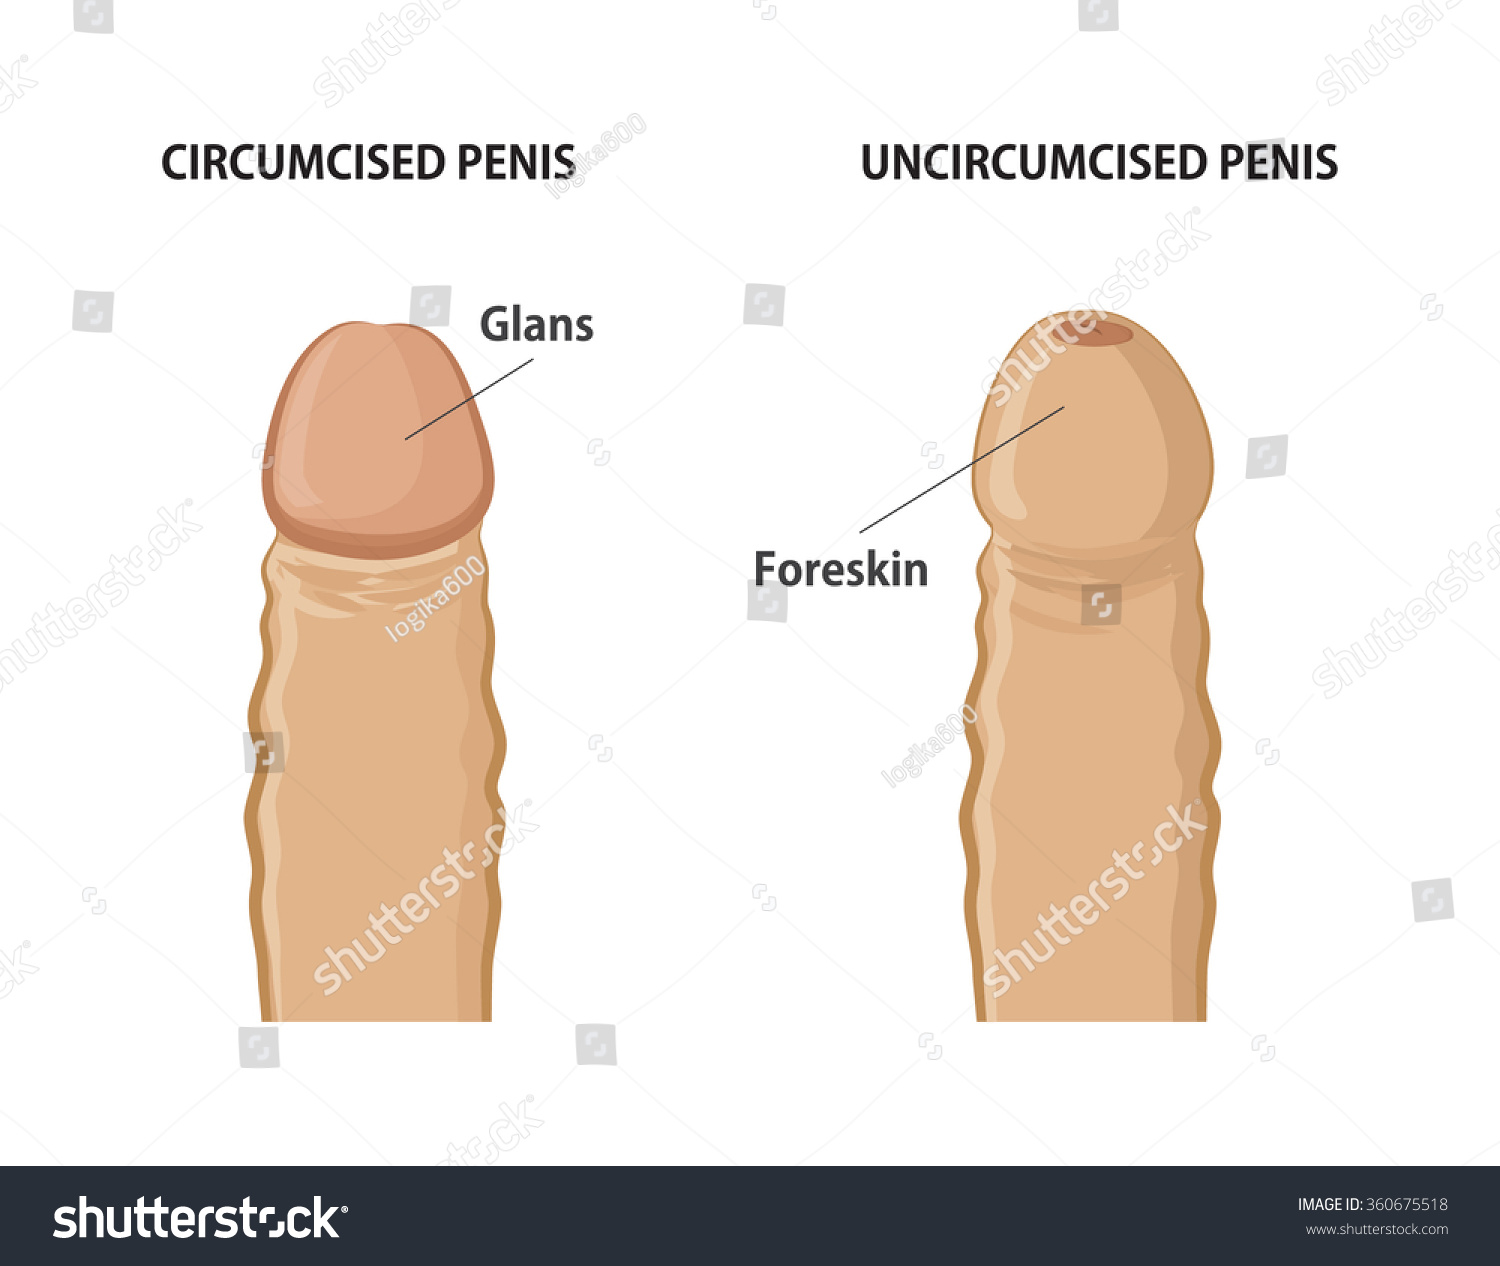 Circumcised Dicks 18